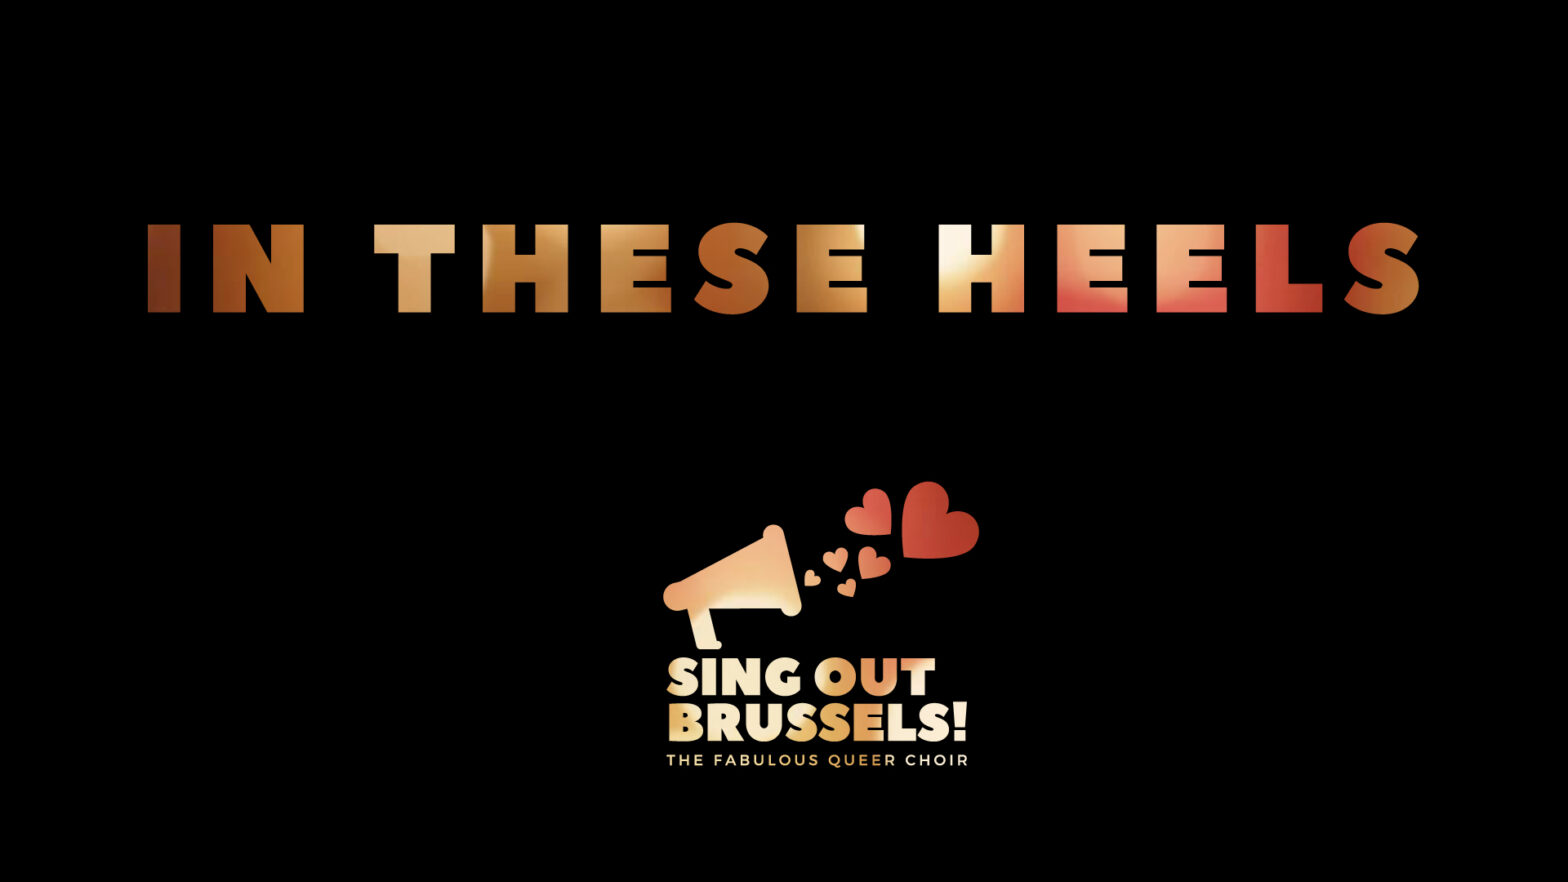 In these heels, een Brussels muzikaal project tegen queerfobie